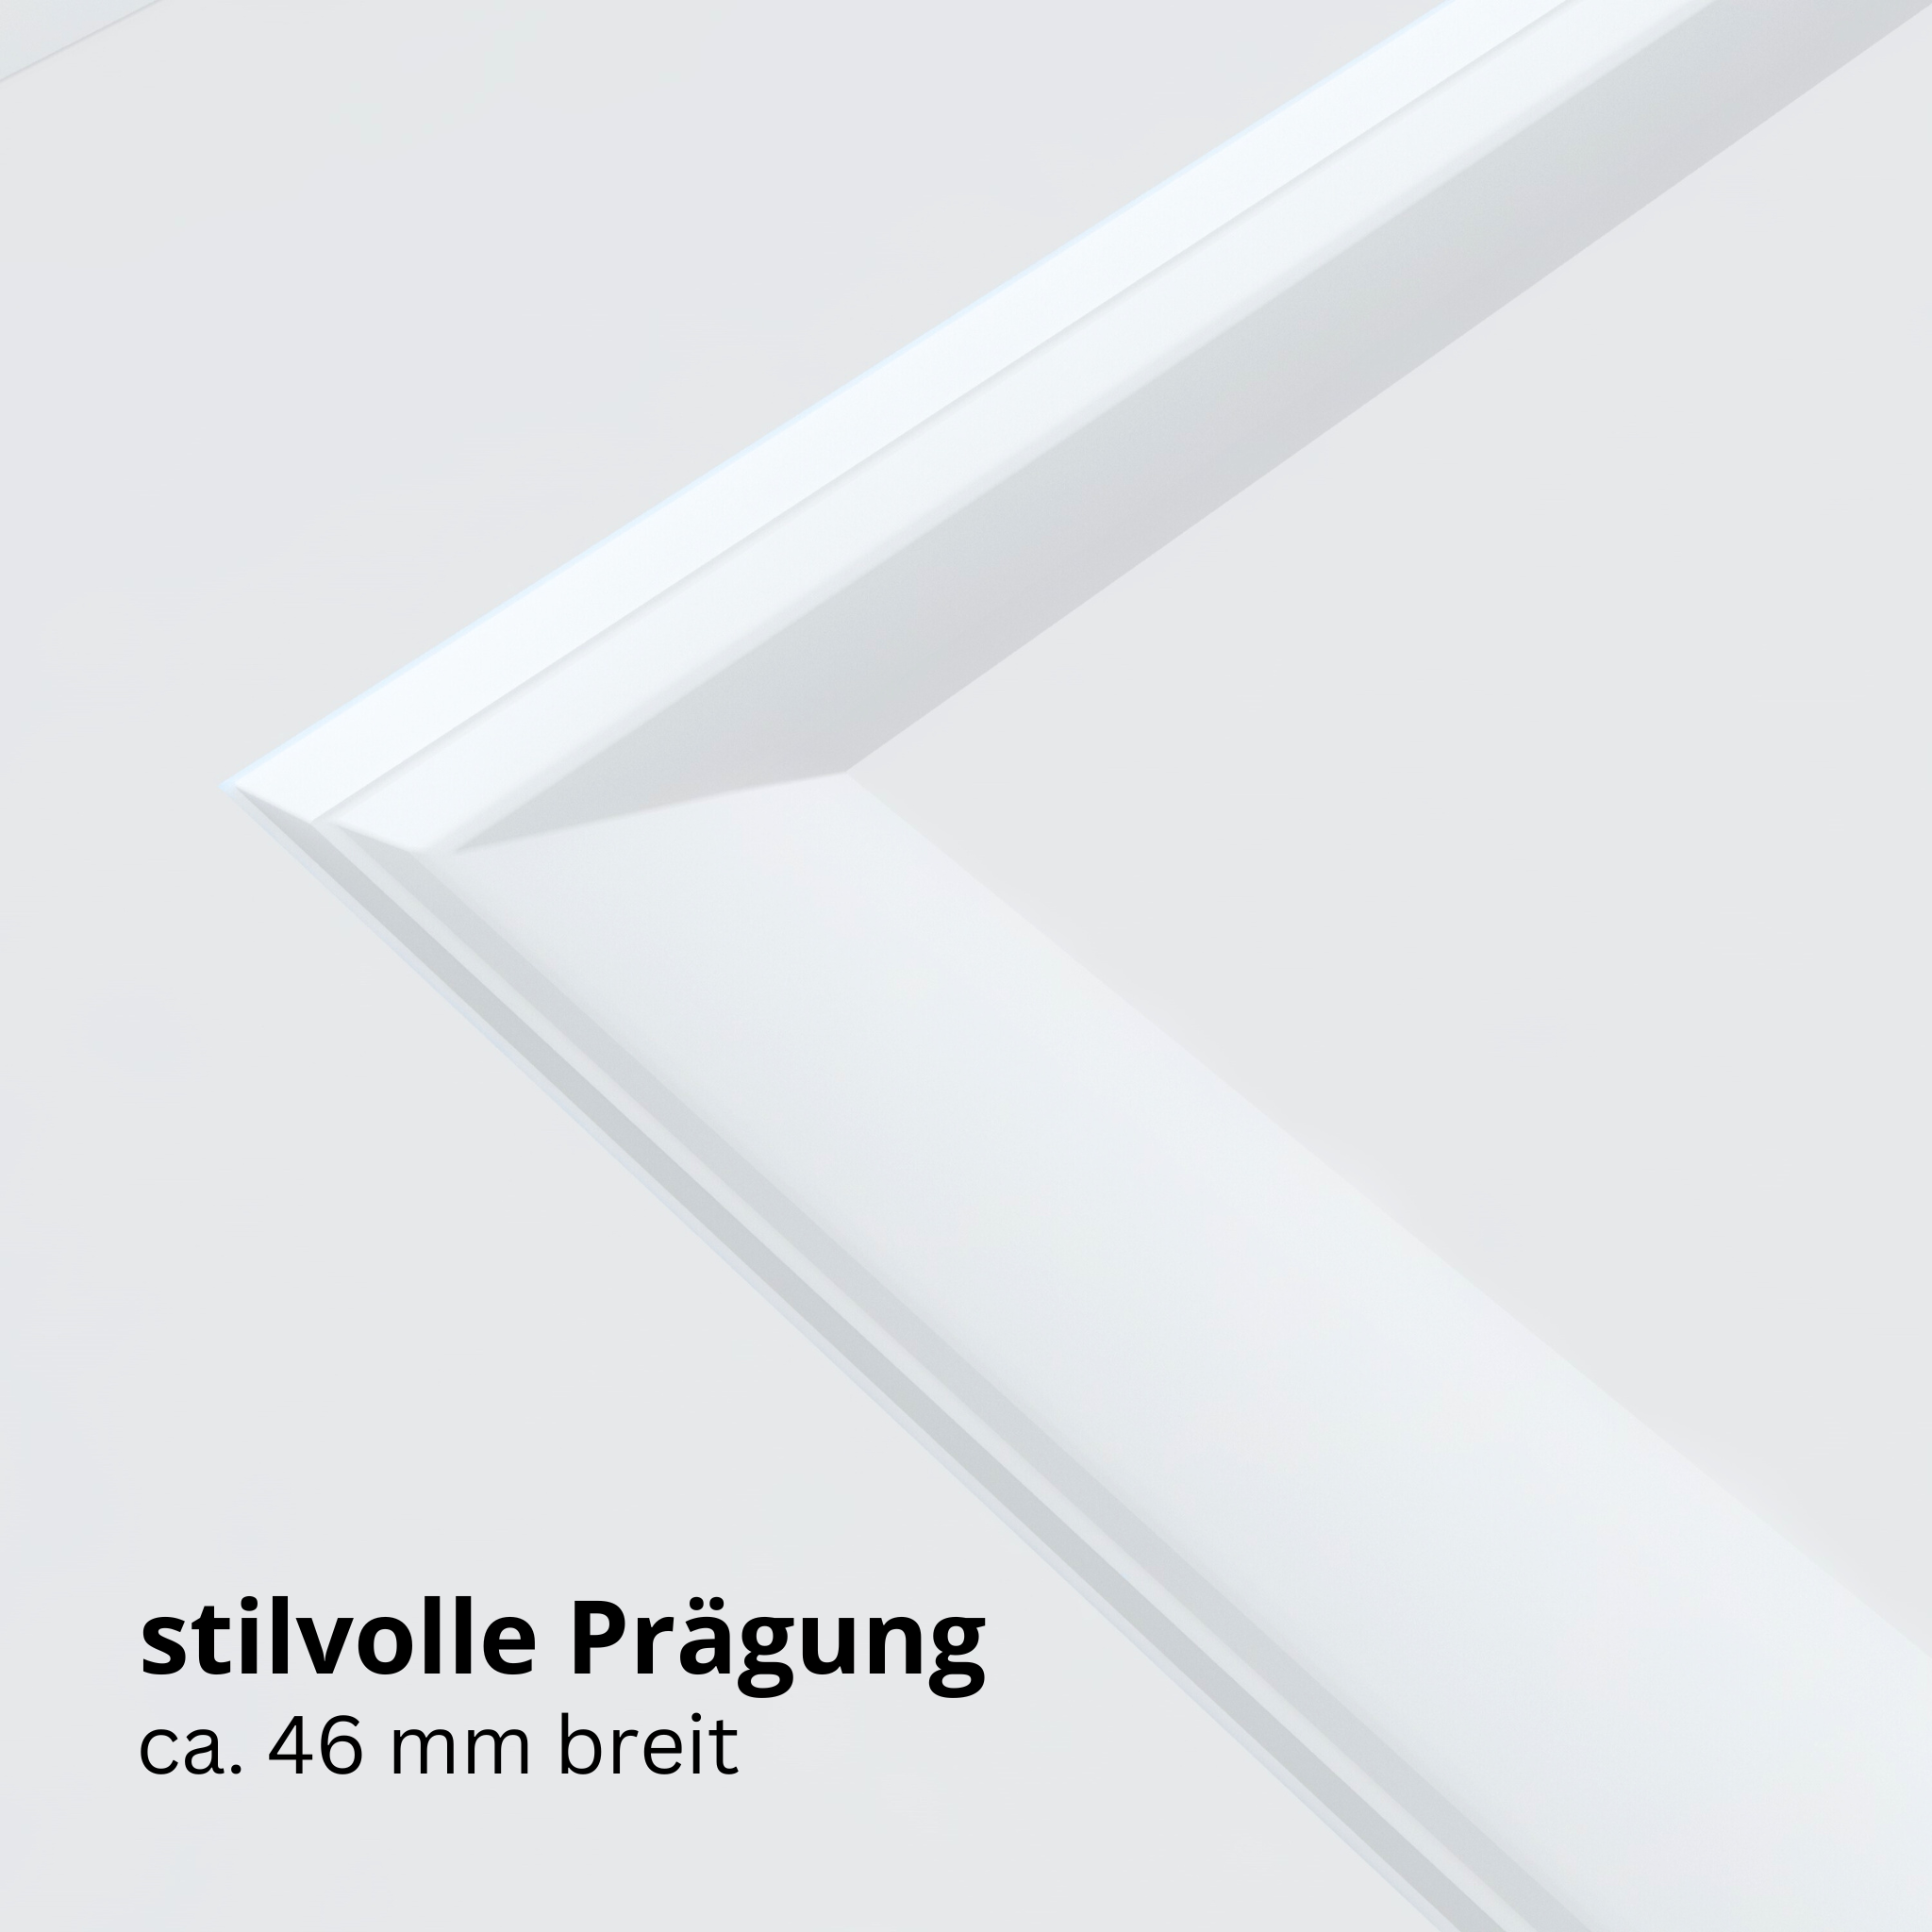 Wohnungseingangstür brillant-weiß 4 Kassetten Designkante SK1 / KK3 - Modell Stiltür K43